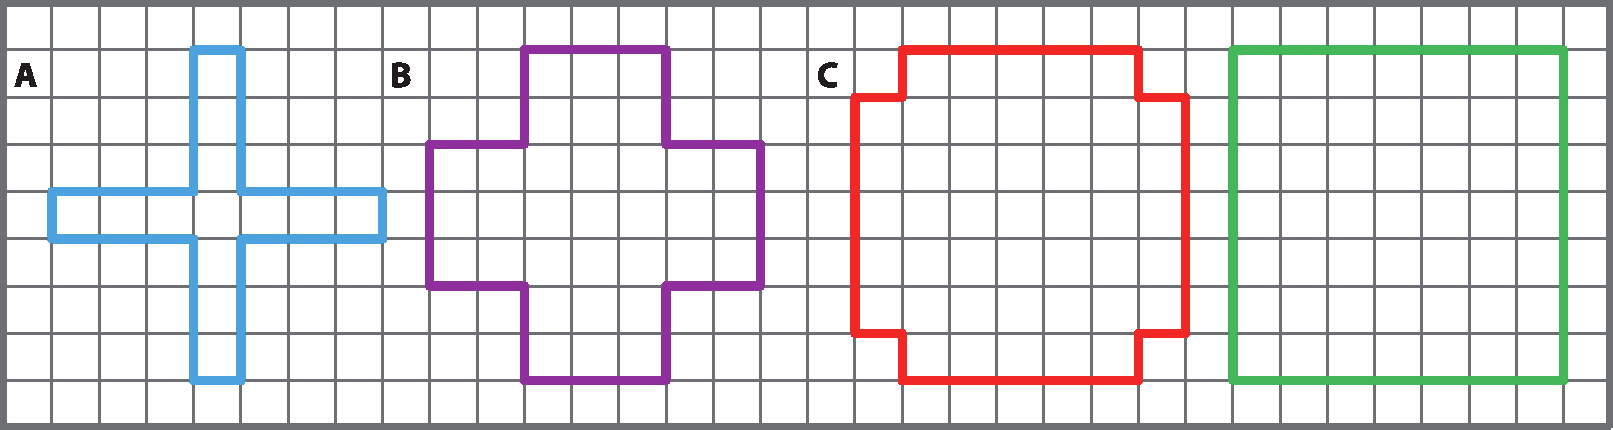 Ilustração. Dodecágonos A, B e C e quadrado em verde desenhados em uma malha quadriculada.